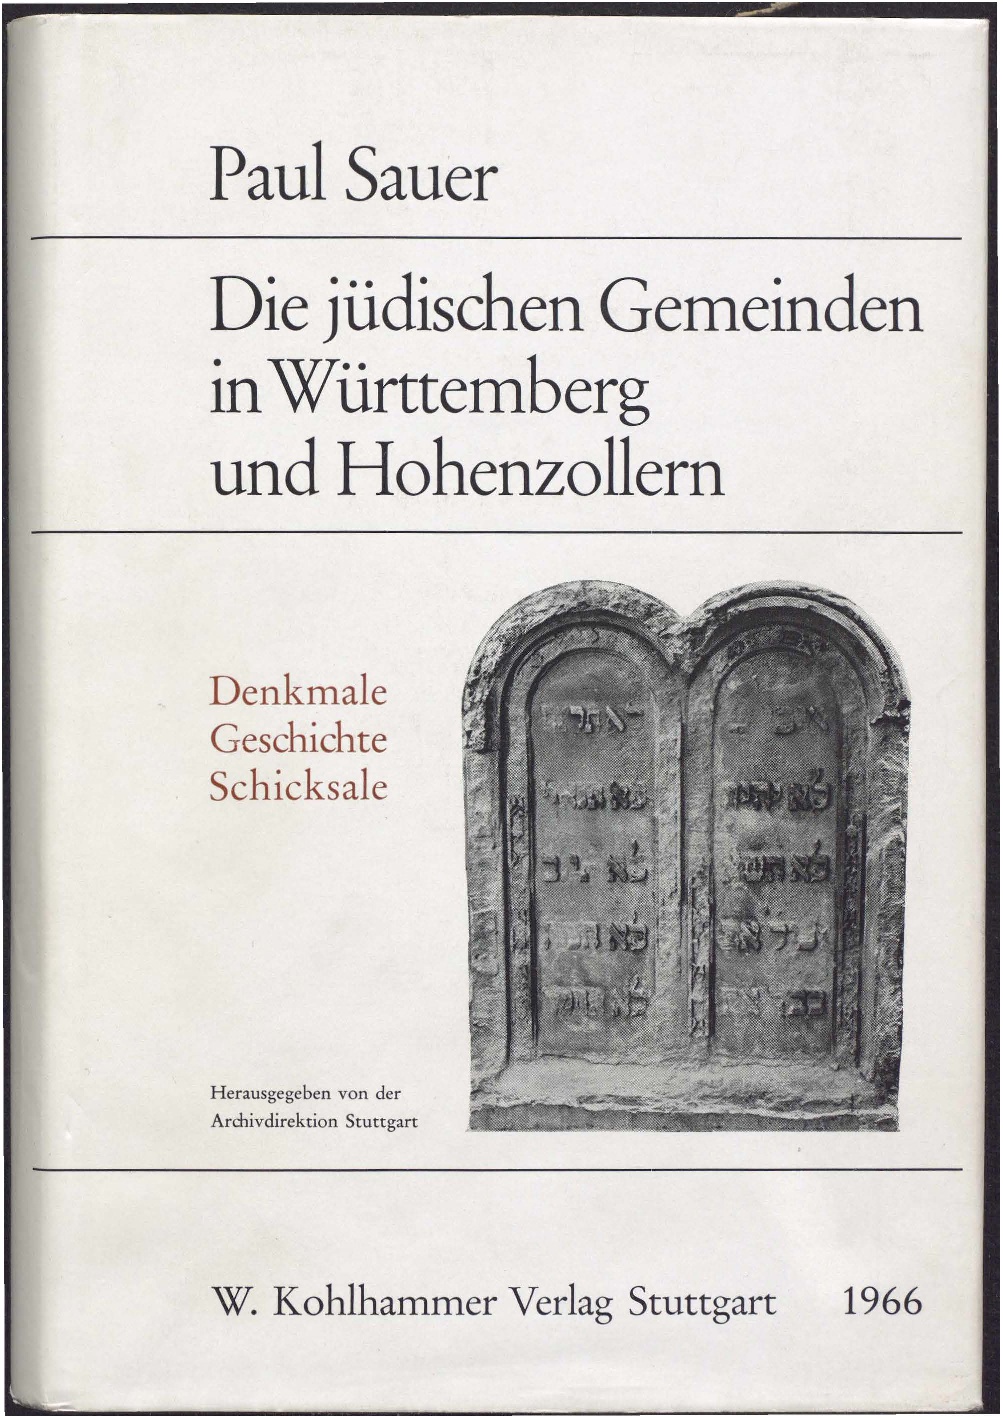  „Die jüdischen Gemeinden in Württemberg und Hohenzollern“ von Paul Sauer aus dem Jahr 1966 [Quelle: Landesarchiv Baden-Württemberg]